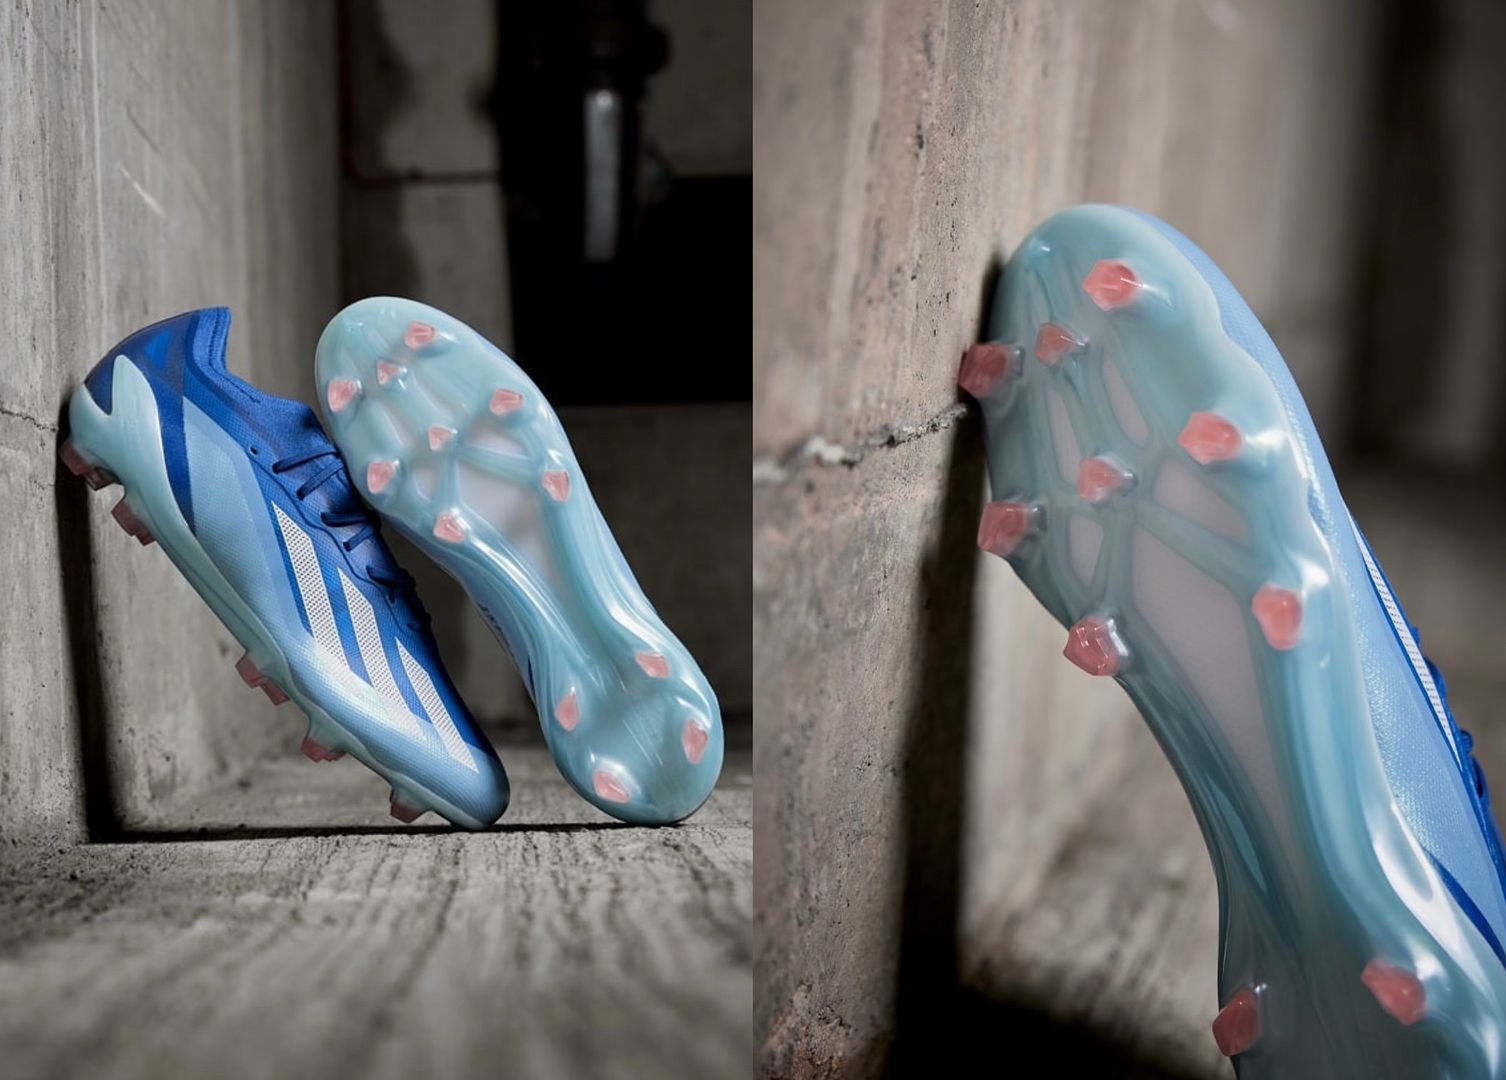 Ra mắt bộ sưu tập giày Adidas Marine Rush cực đẹp!